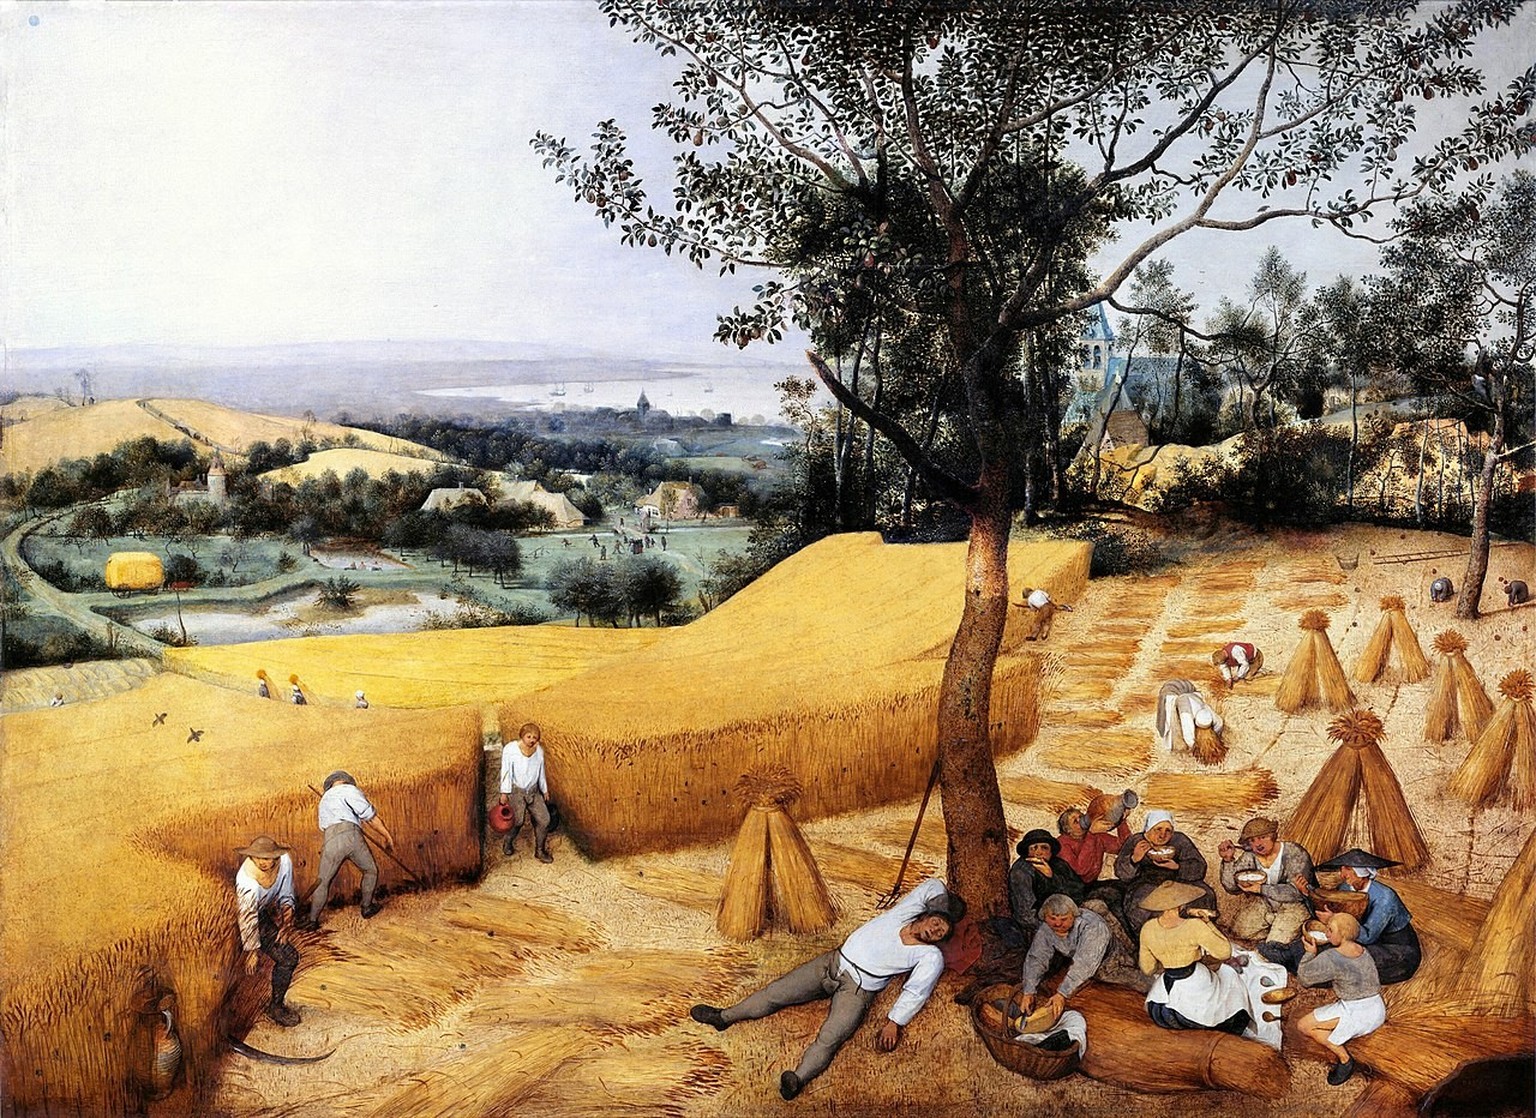 Die Kornernte (Hochsommer), Gemälde von Pieter Bruegel d. Ä.,1565
https://de.wikipedia.org/wiki/Pieter_Bruegel_der_%C3%84ltere#/media/Datei:Pieter_Bruegel_the_Elder-_The_Harvesters_-_Google_Art_Projec ...